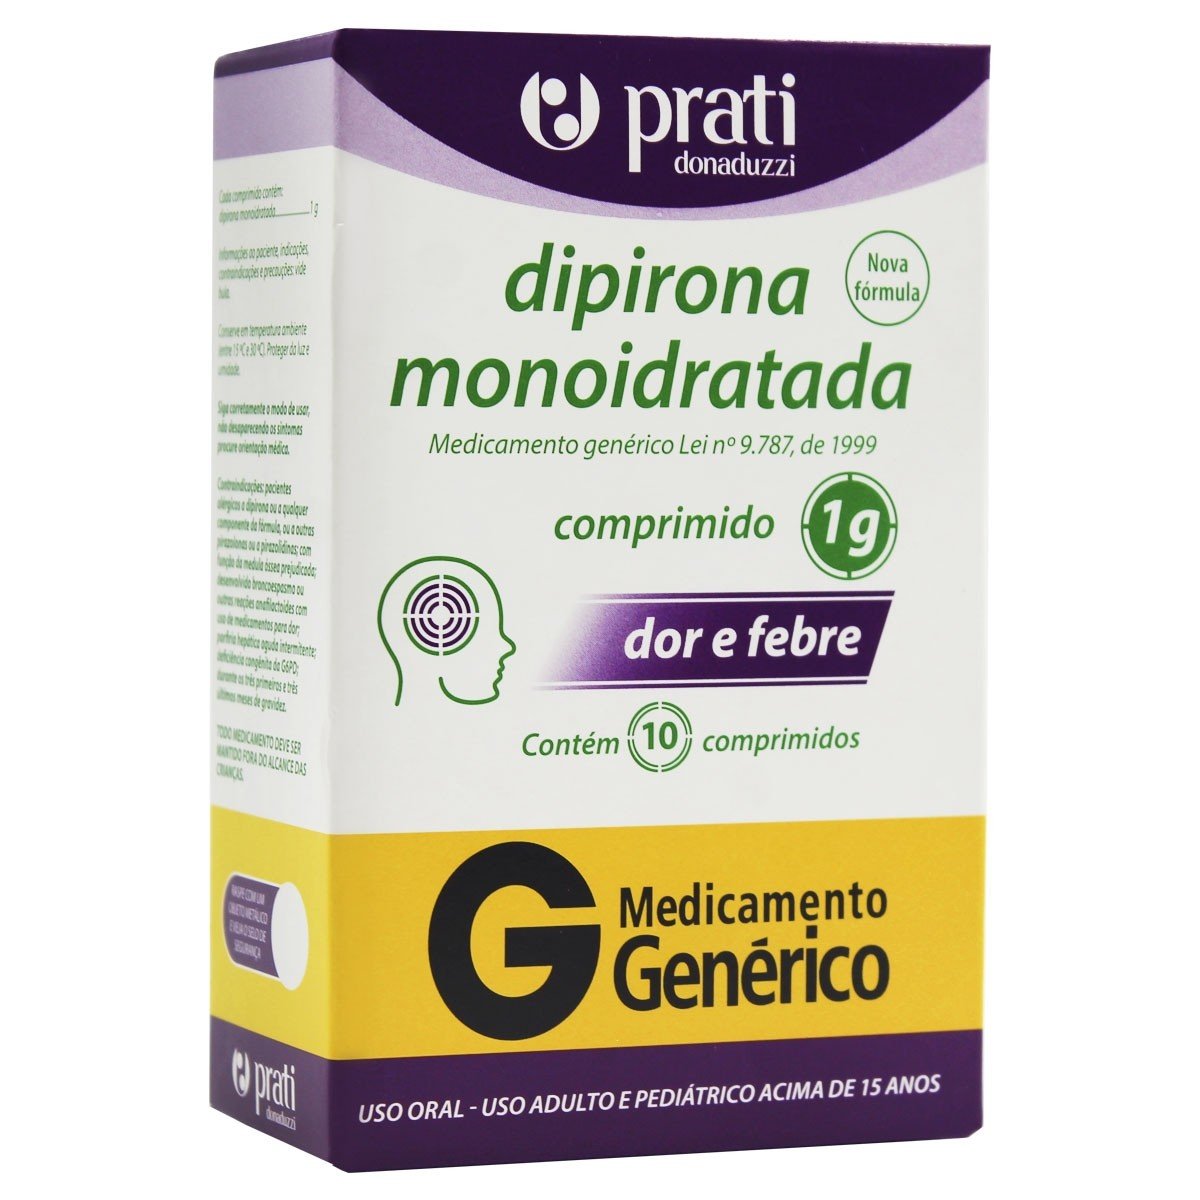 Dipirona-Monoidratada-Caixa-1g-com-10-Comprimidos-Generico-Prati-Donaduzzi